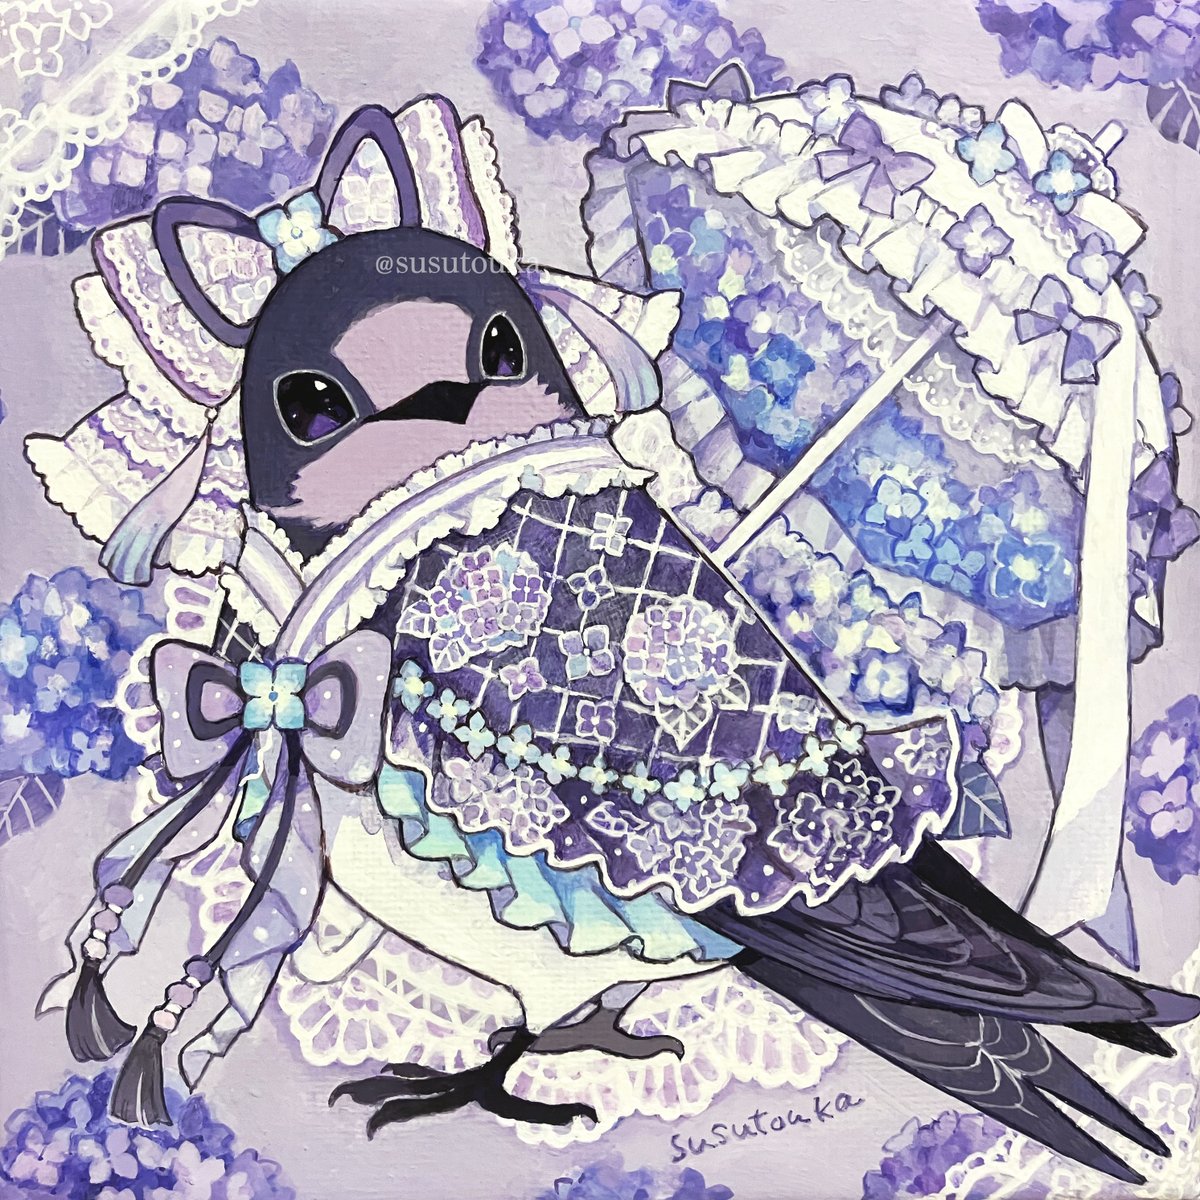 「創作部門 来年はもっと鳥のシリーズイラスト描いていきます!(1枚目以外は 鳥 ×」|susutoukaのイラスト